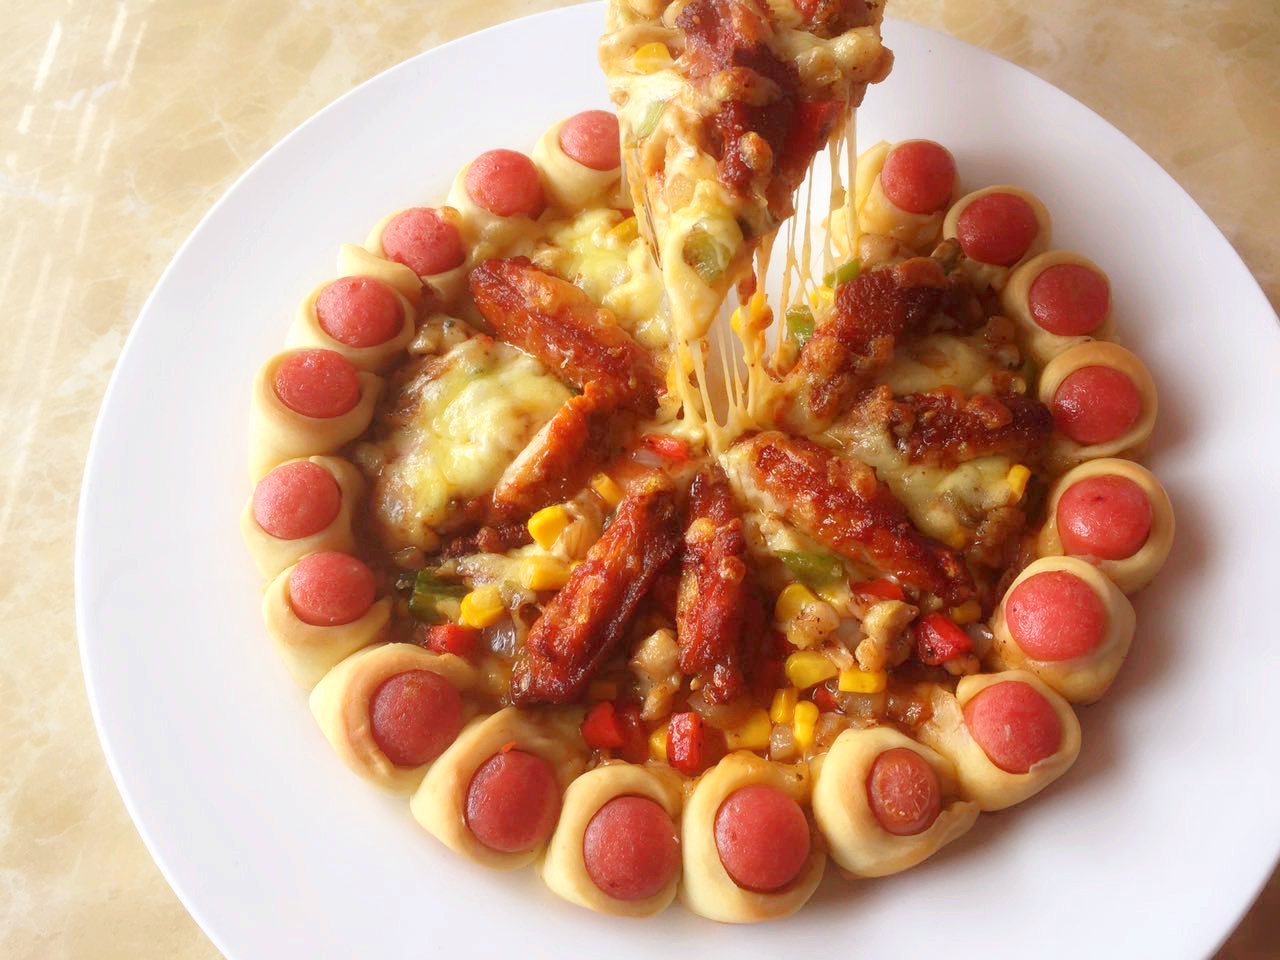 传统披萨和卷边披萨图片